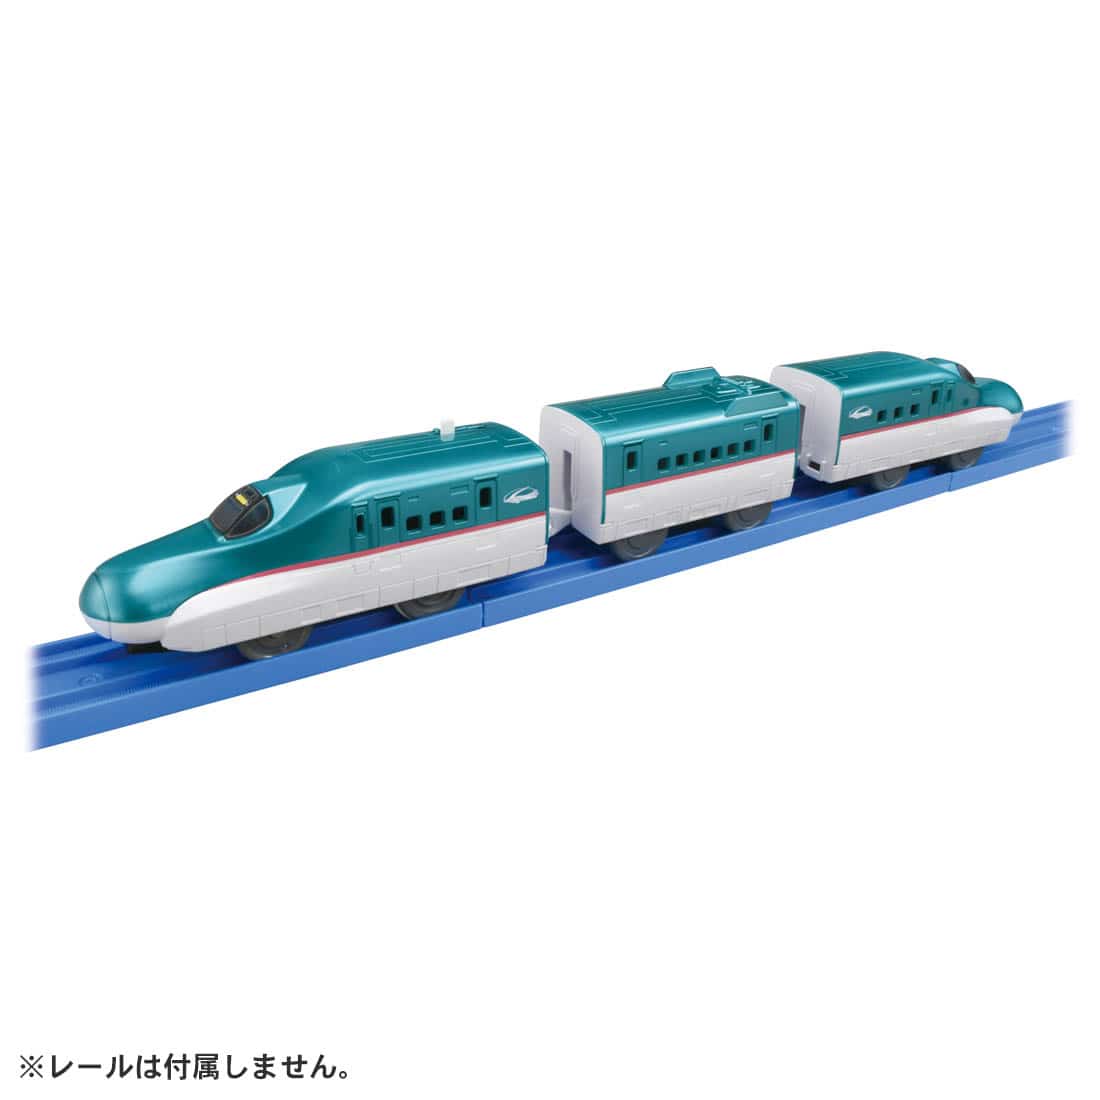 タカラトミー 187882 ES-02 E5系新幹線はやぶさ | 鉄道模型 通販 